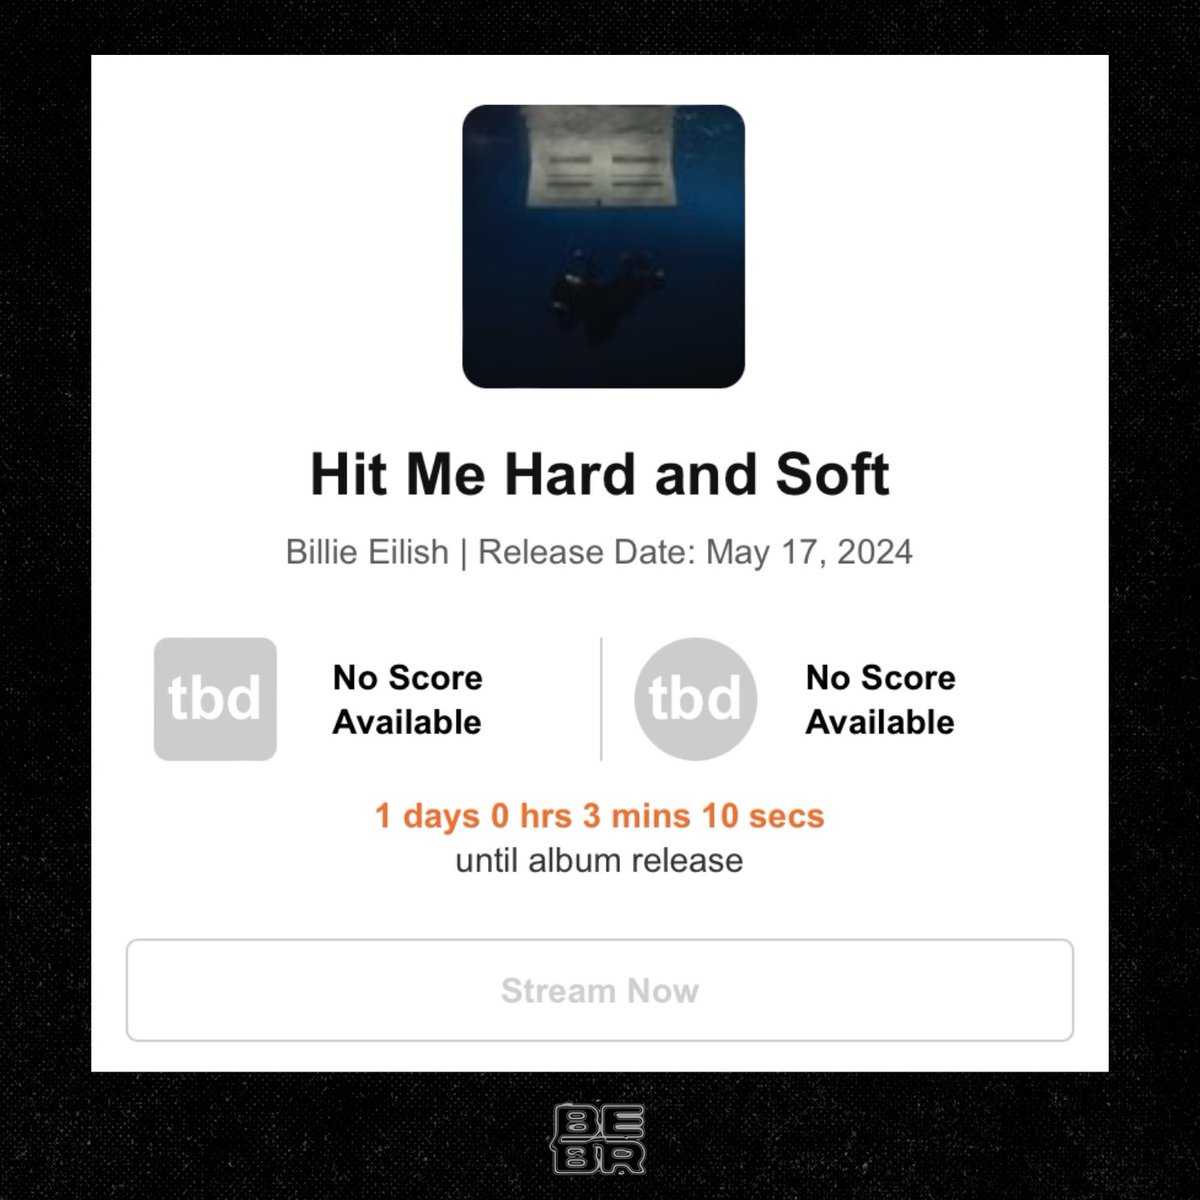 🚨Entre a aclamação! Página do novo album da Billie Eilish, “Hit Me Hard and Soft”, foi criada no Metacritic.